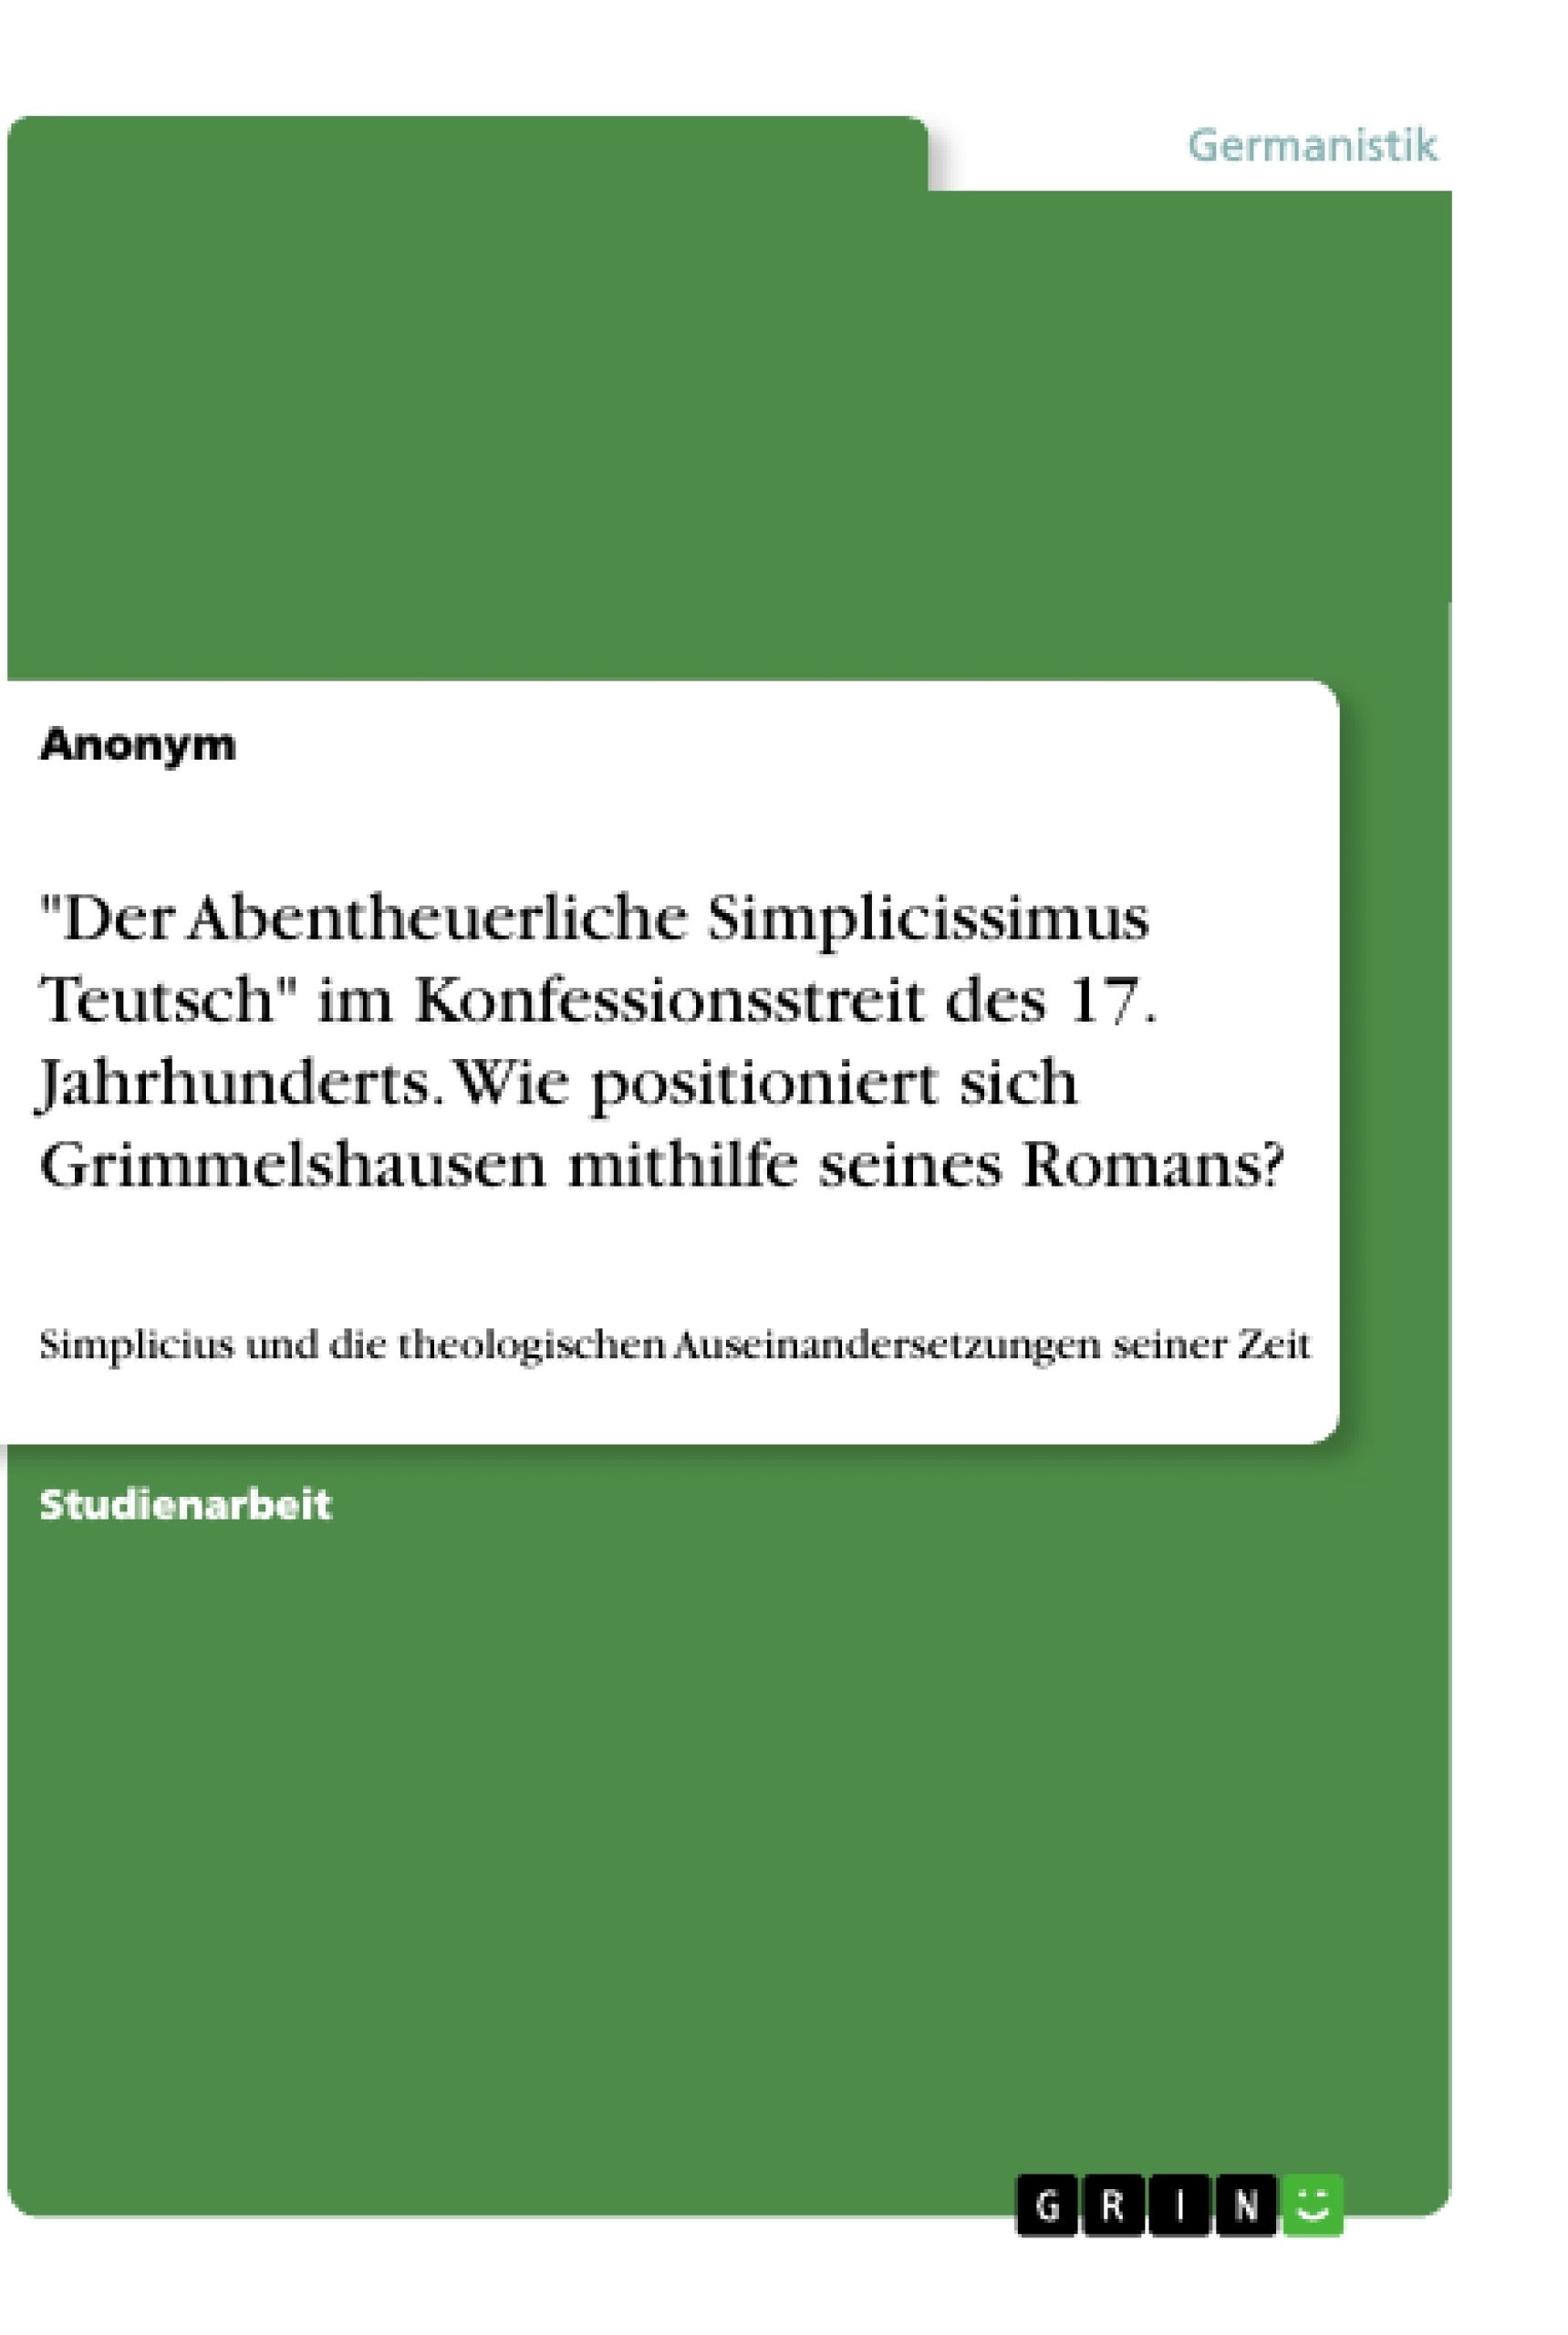 Titel: "Der Abentheuerliche Simplicissimus Teutsch" im Konfessionsstreit des 17. Jahrhunderts. Wie positioniert sich Grimmelshausen mithilfe seines Romans?